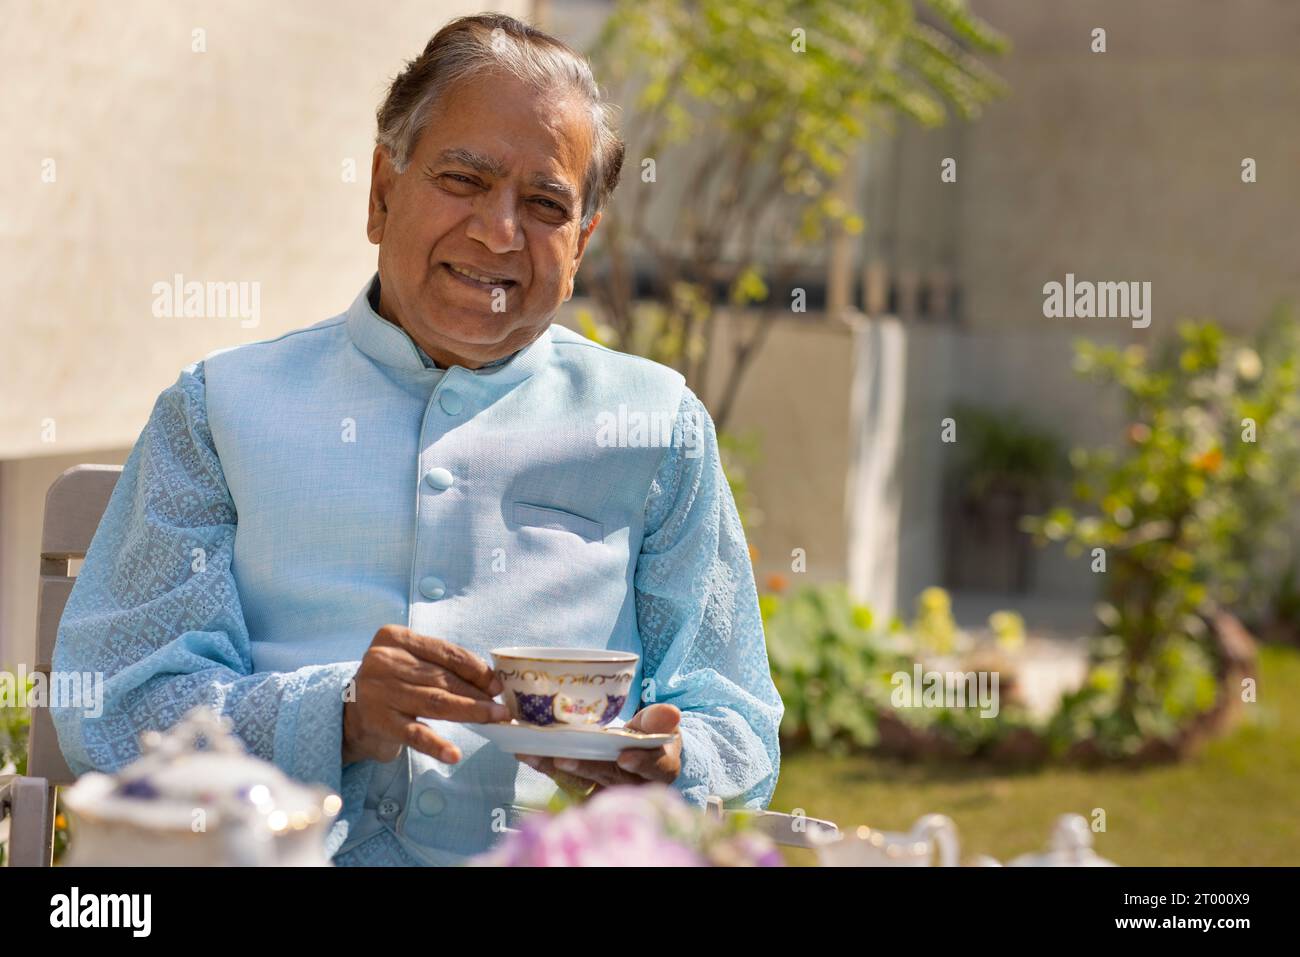 Porträt eines älteren Mannes, der Tee im Garten trinkt Stockfoto